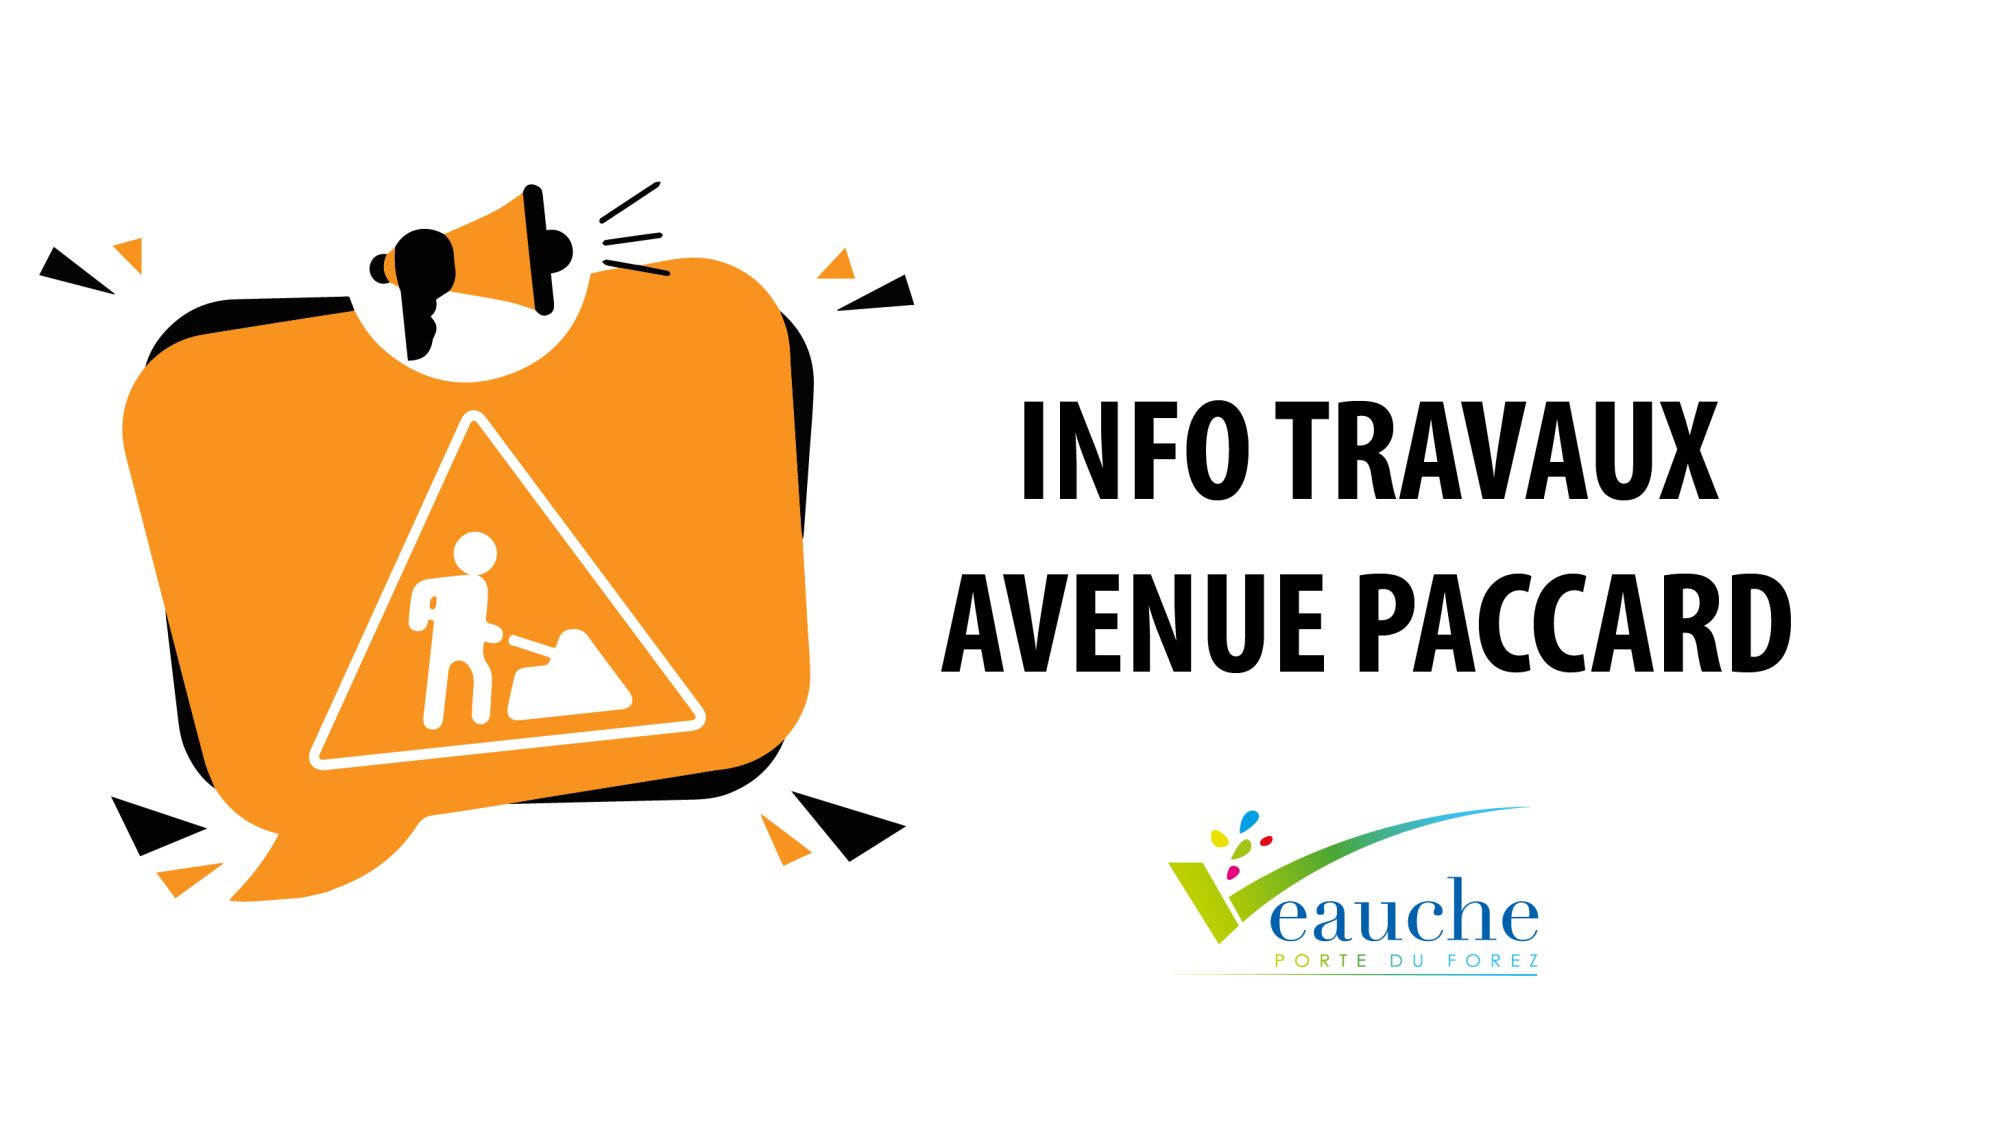 Travaux Avenue Paccard du 15 au 19 avril : Infos pratiques